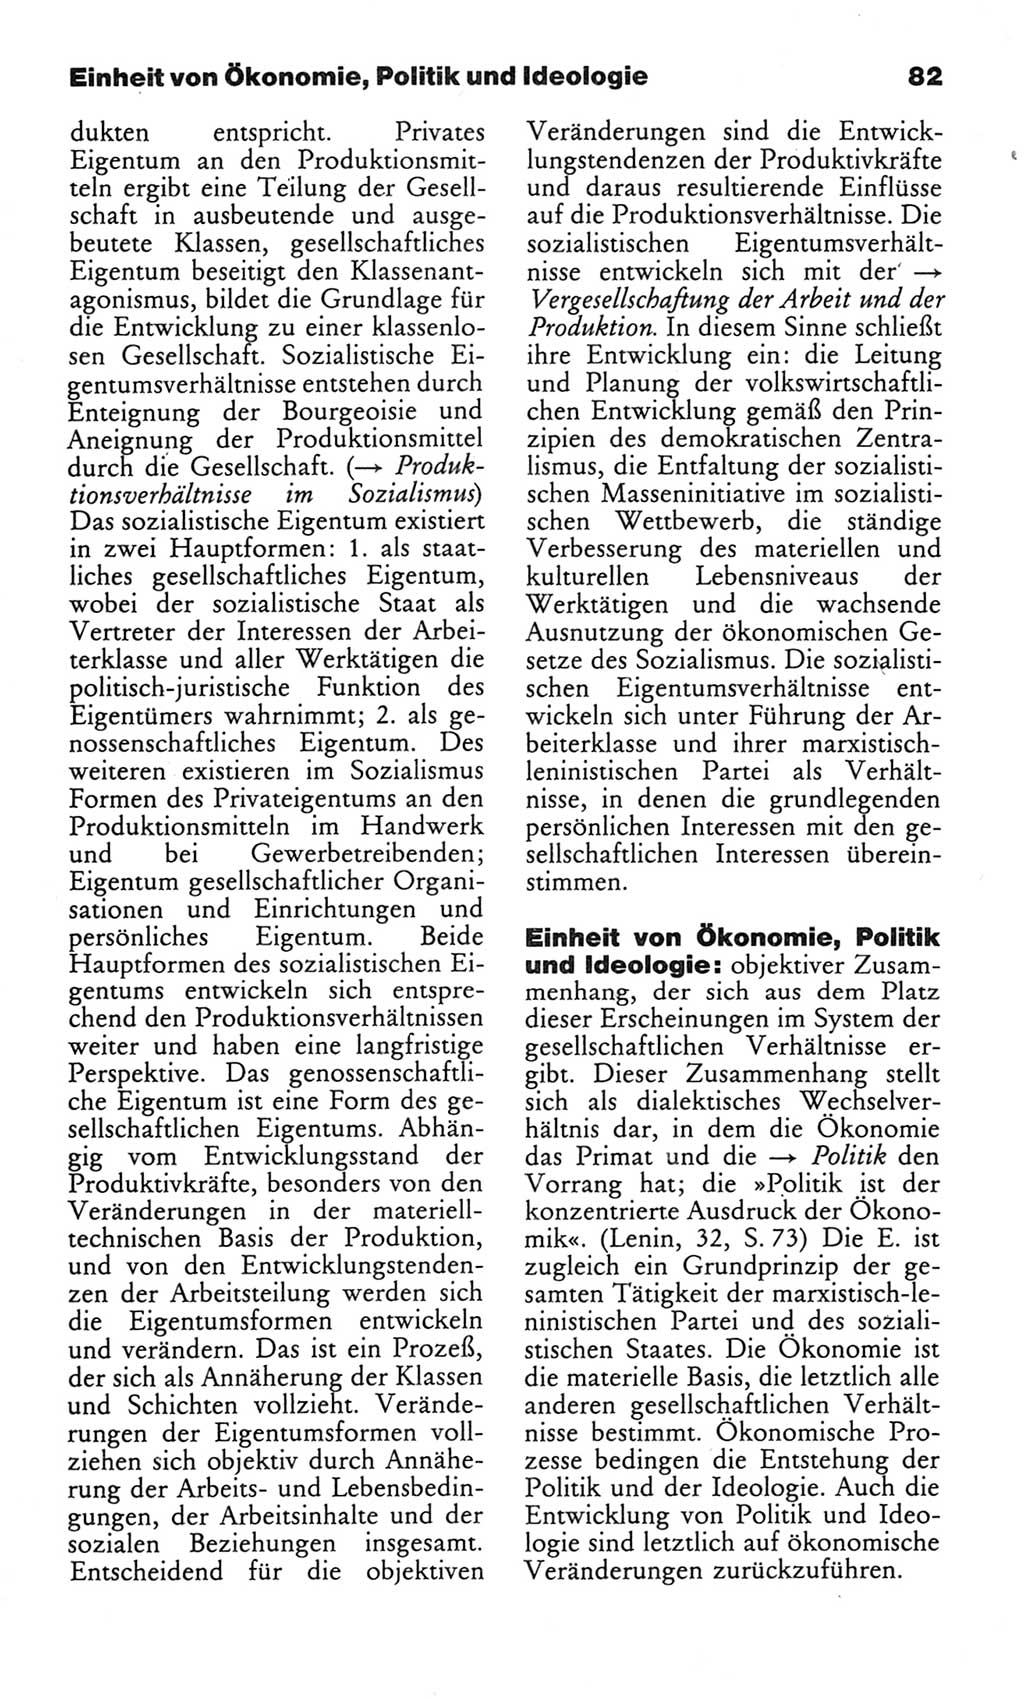 Wörterbuch des wissenschaftlichen Kommunismus [Deutsche Demokratische Republik (DDR)] 1982, Seite 82 (Wb. wiss. Komm. DDR 1982, S. 82)